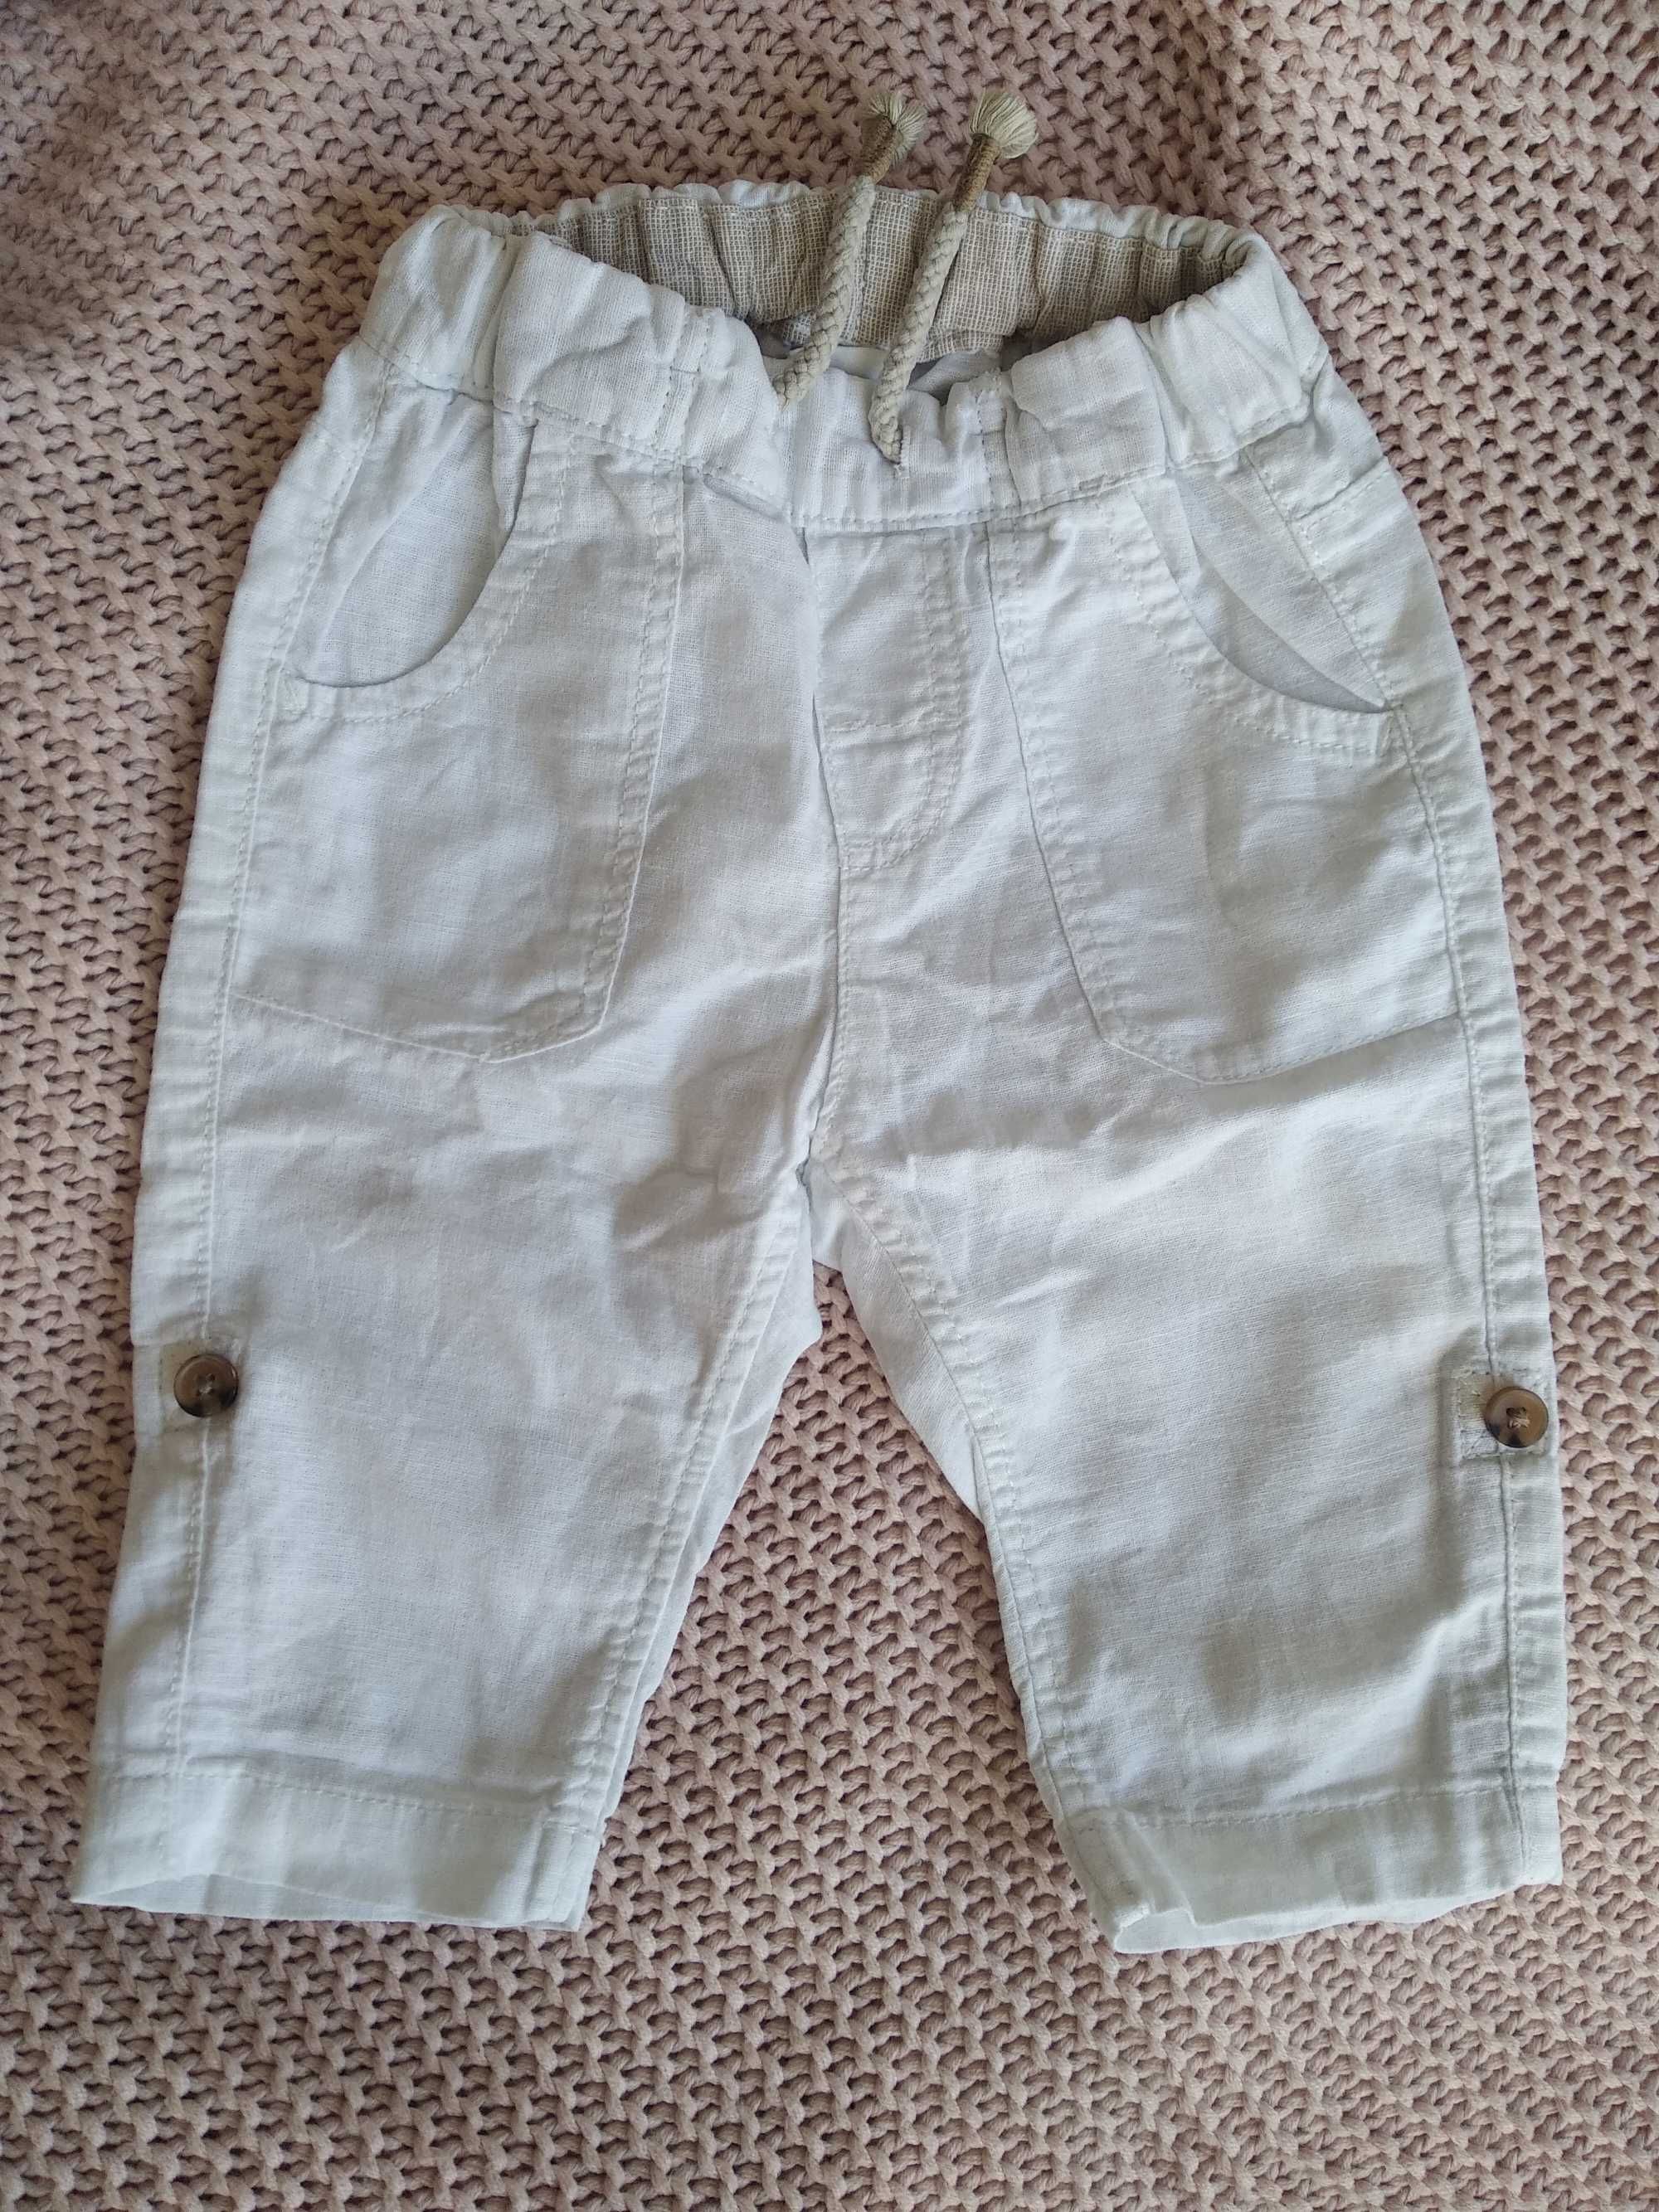 Spodnie H&M dziecięce białe lniane, r. 68